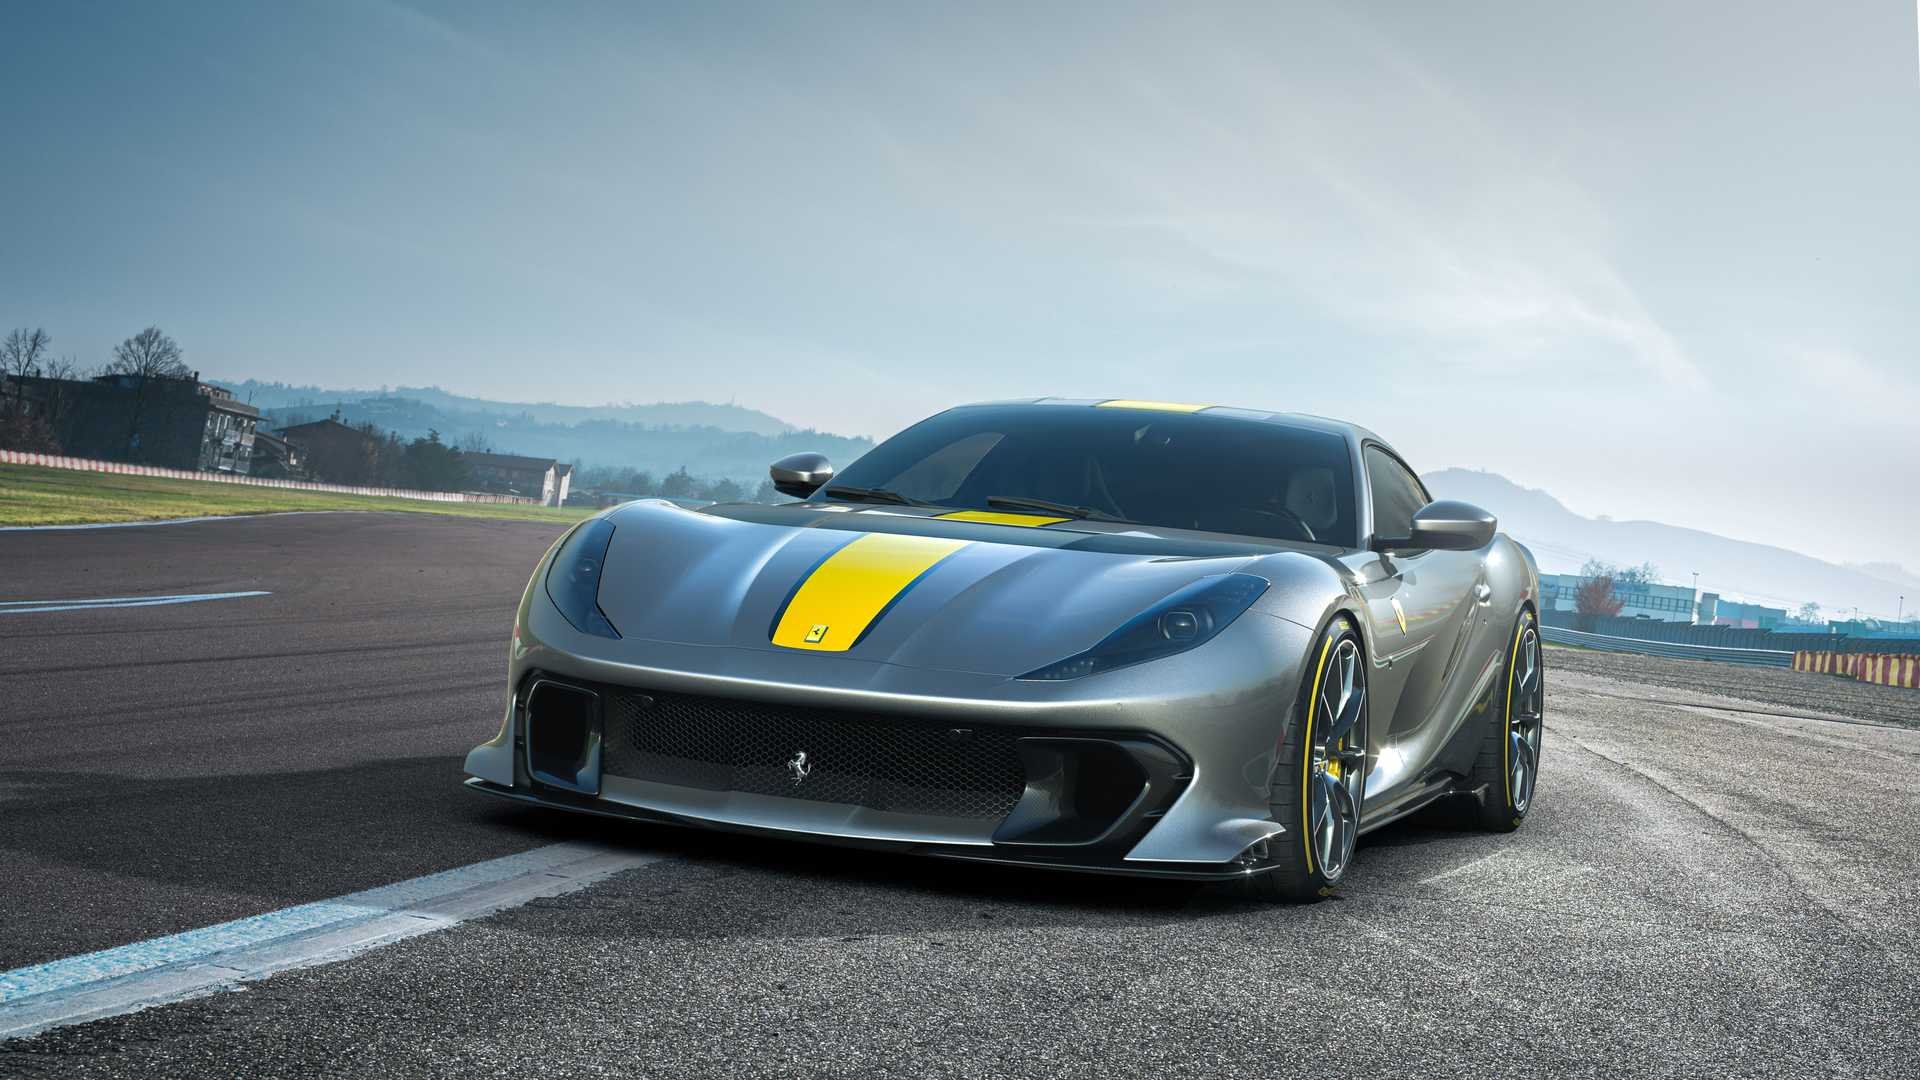 Ferrari представила свой самый мощный дорожный суперкар  1